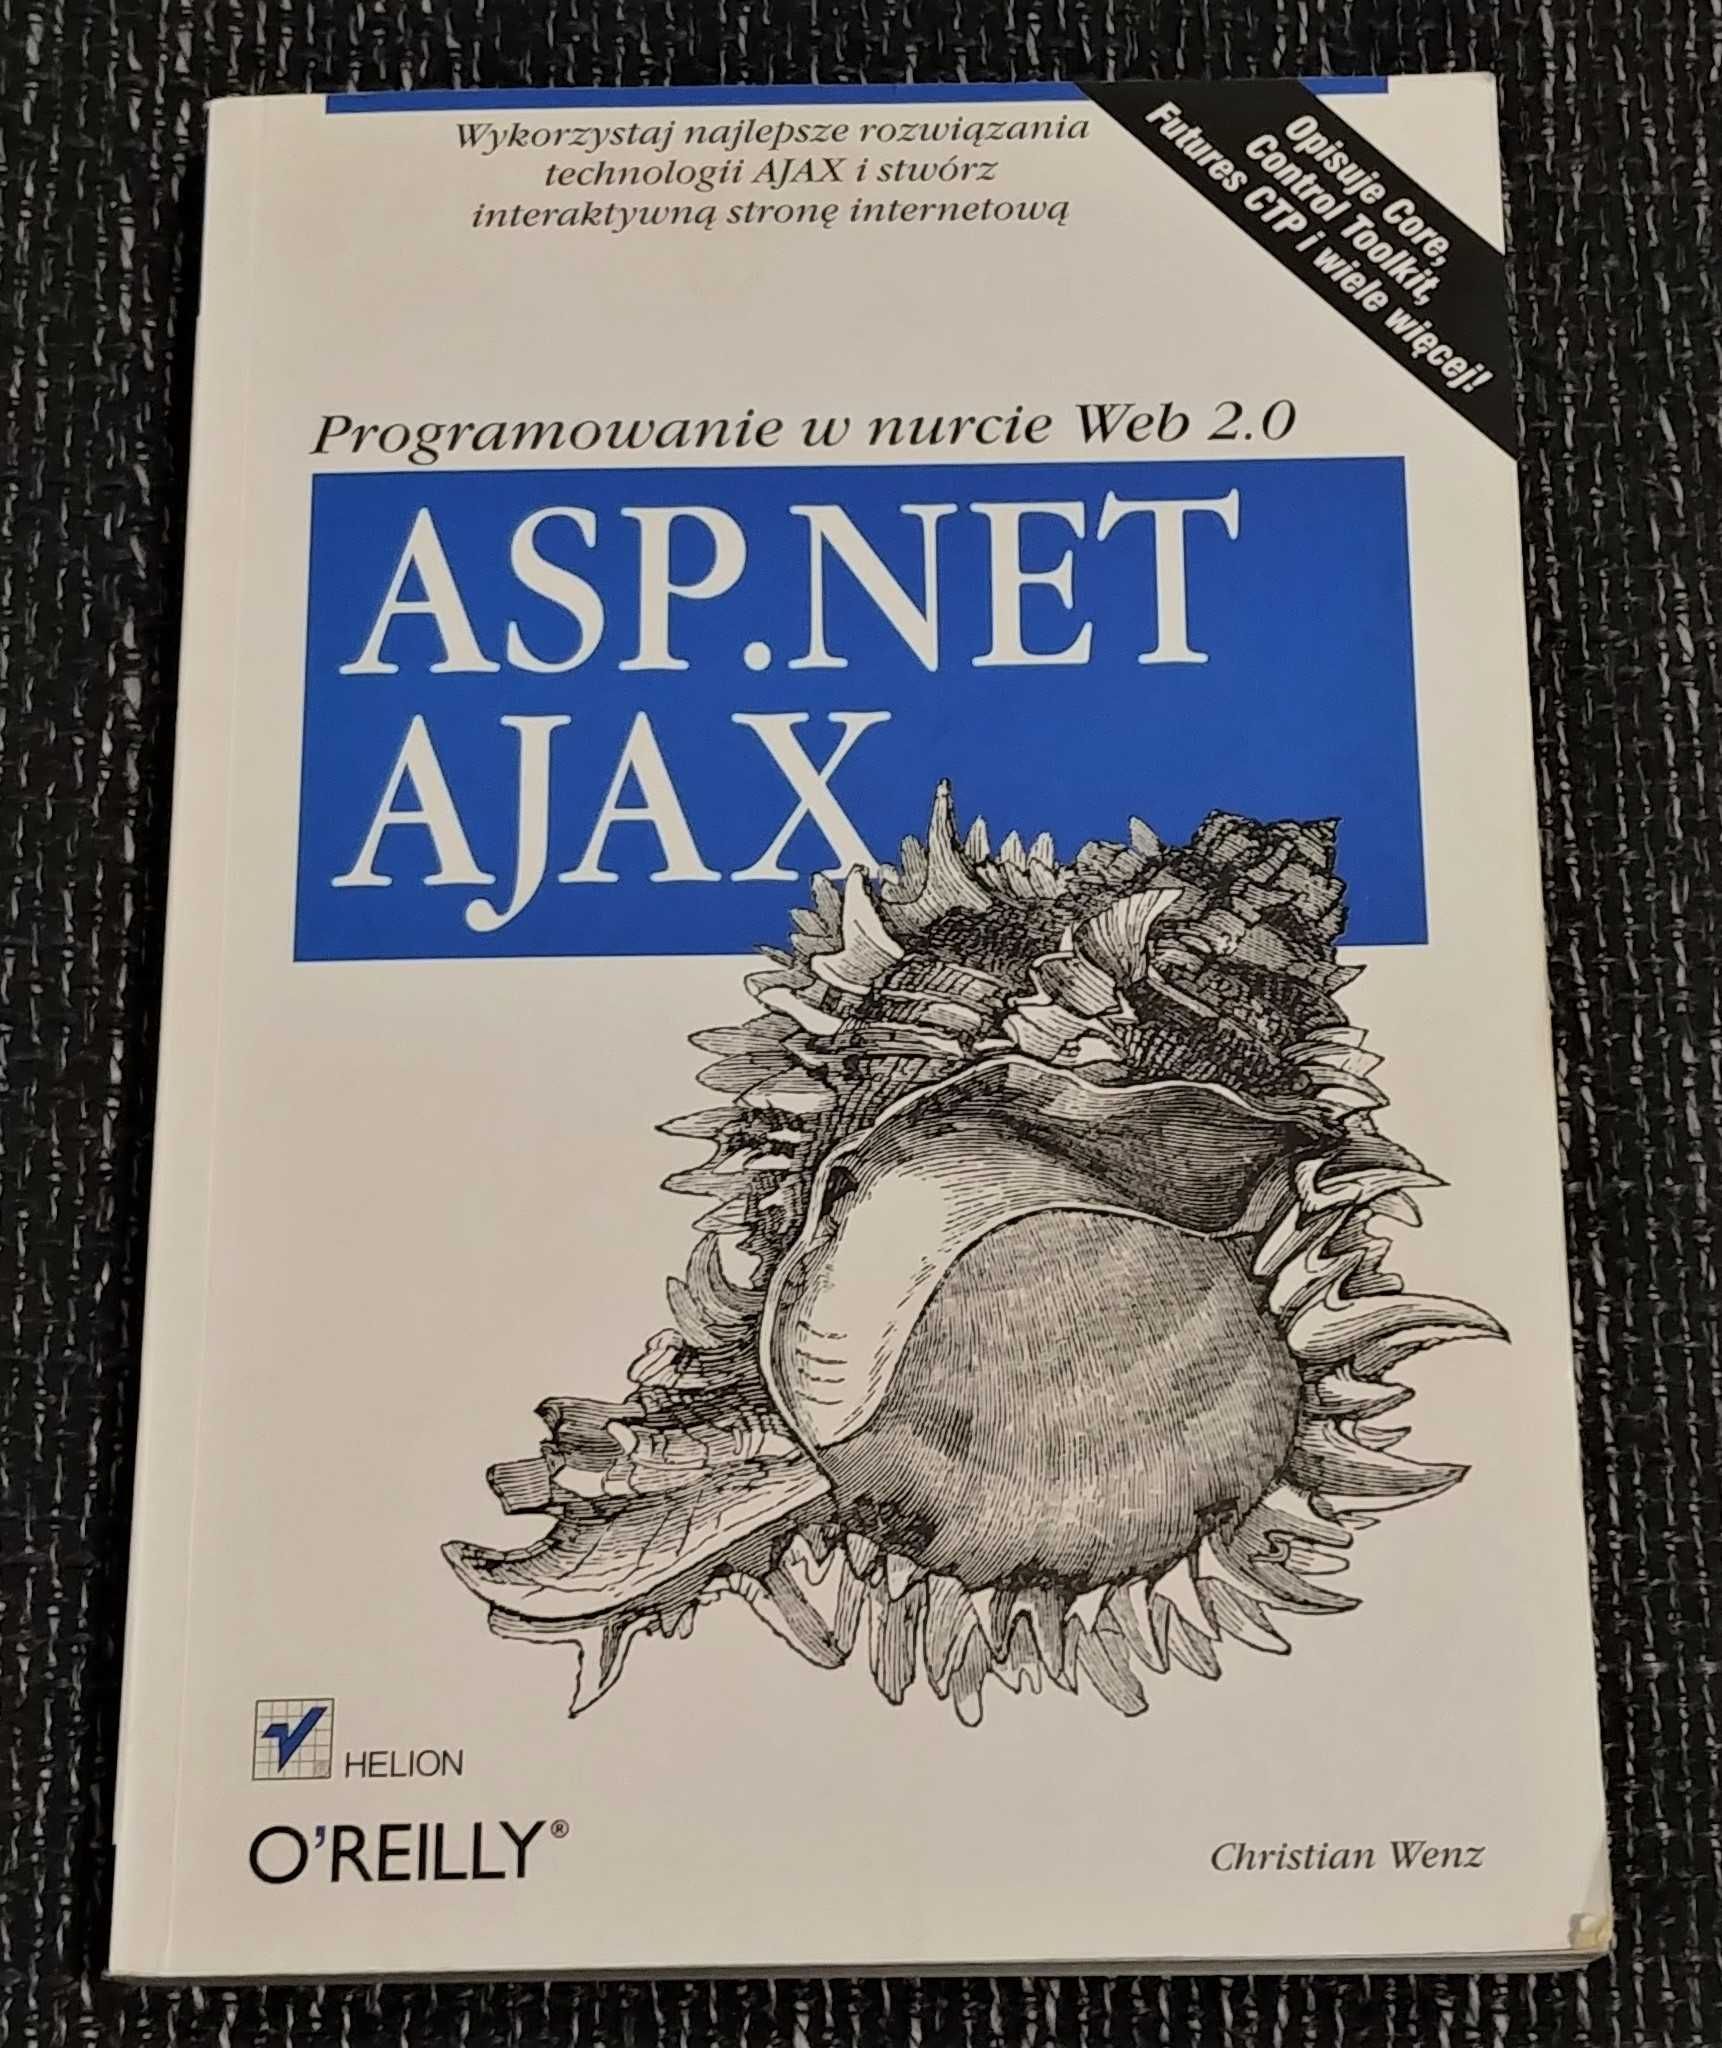 C. Wenz: ASP.NET AJAX. Programowanie w nurcie Web 2.0